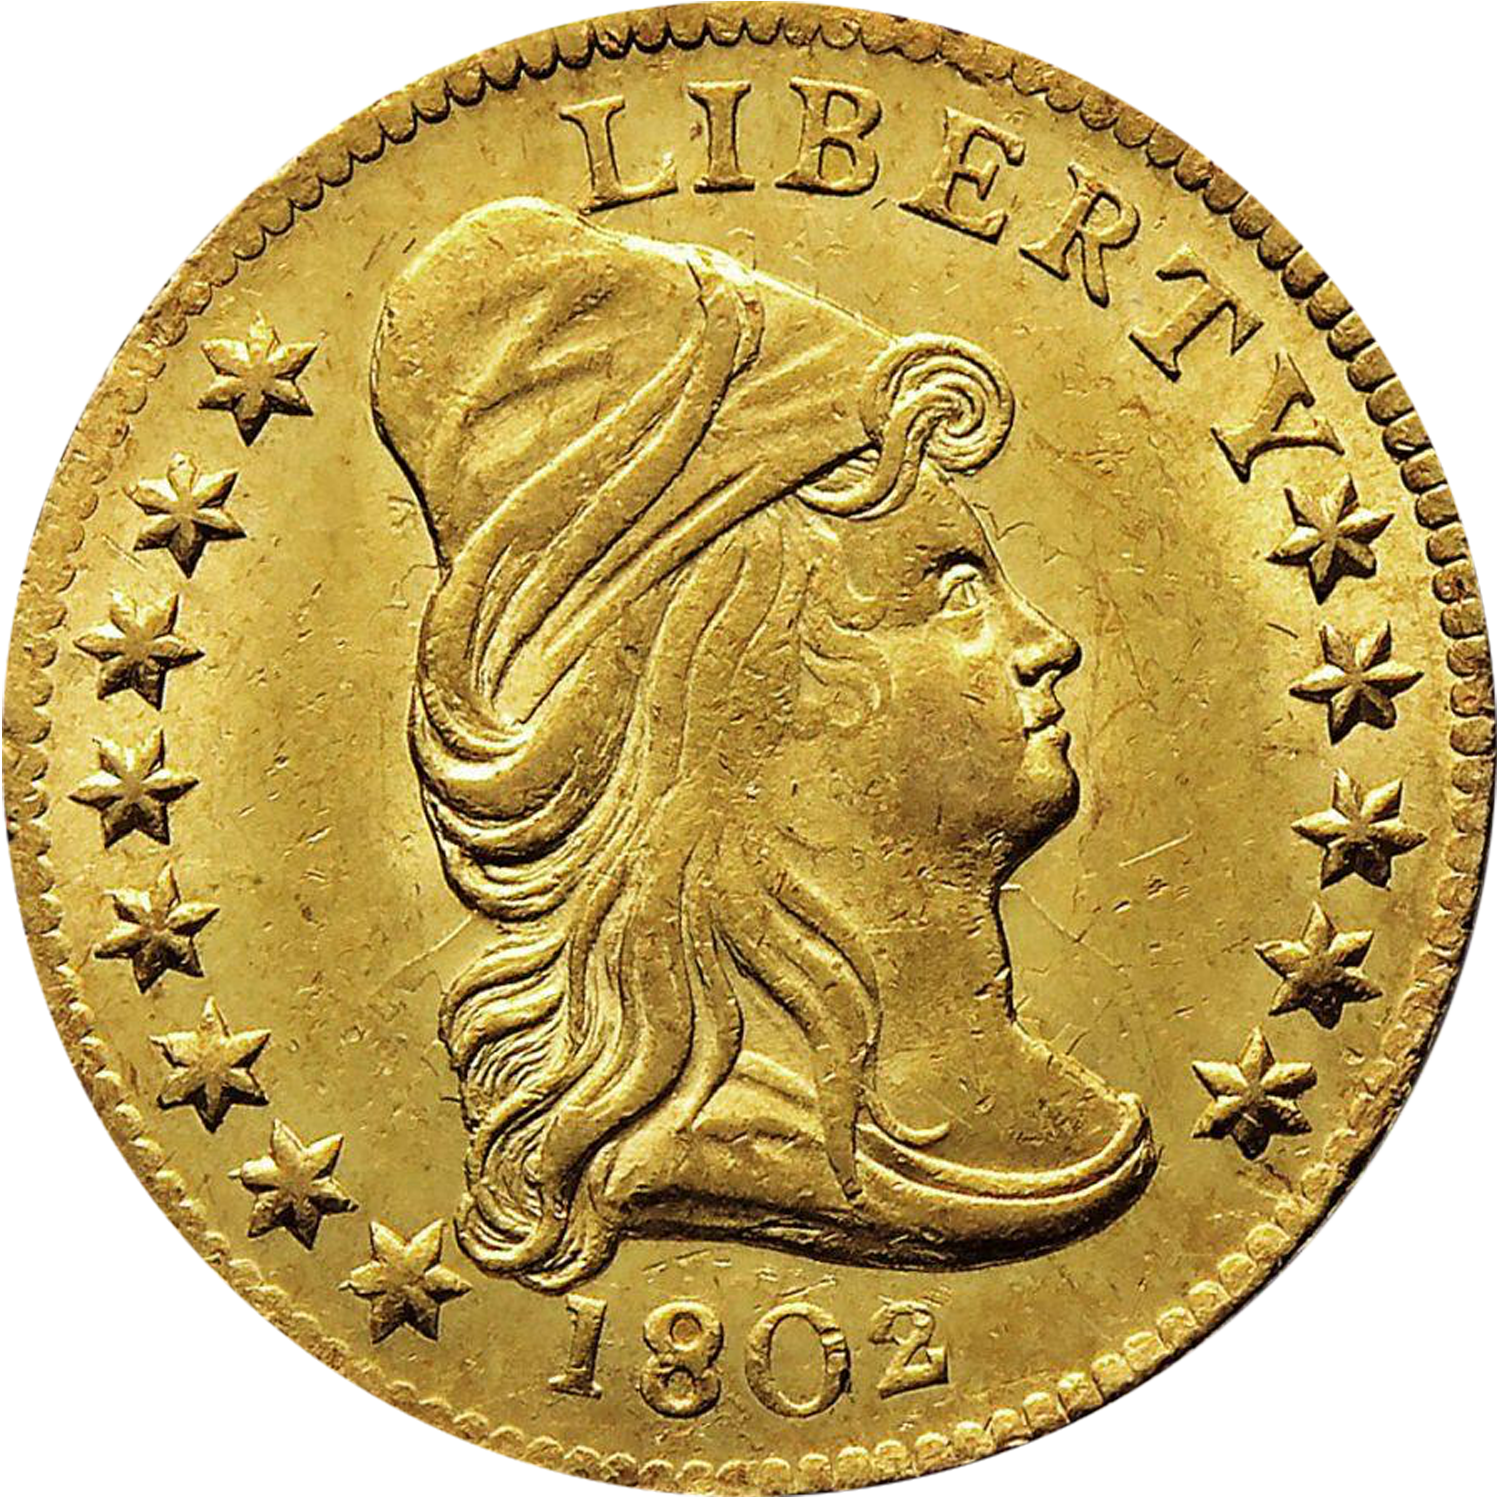 1802 quarter eagle gold value